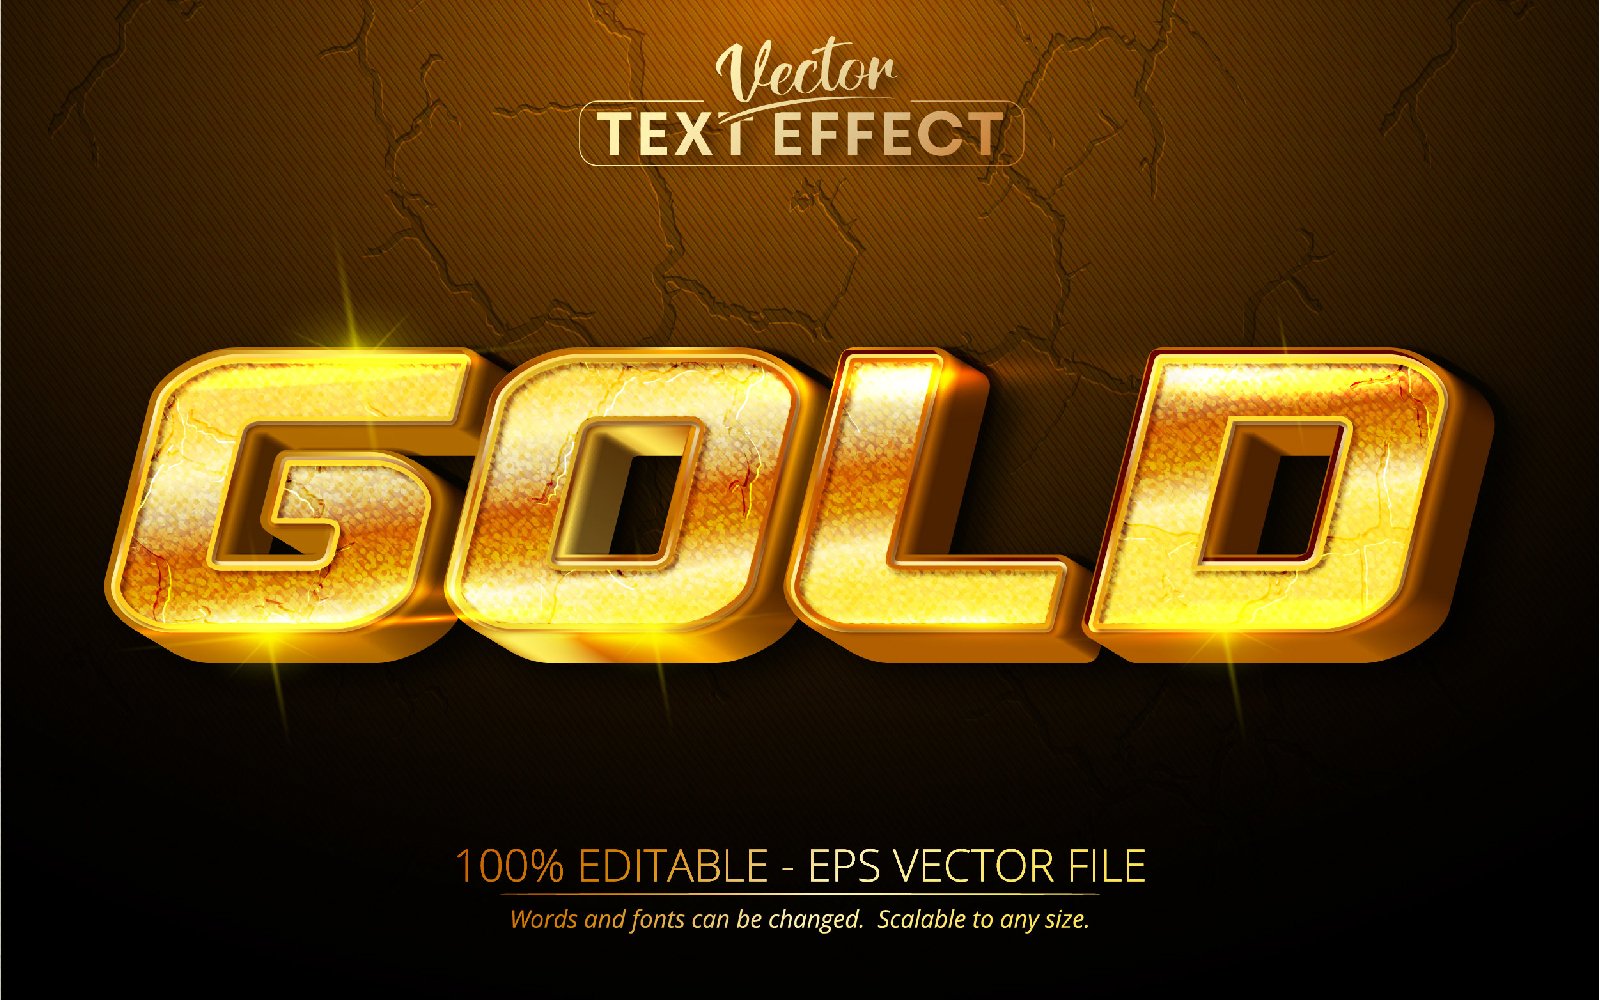 Template #219928 Golden Text Webdesign Template - Logo template Preview